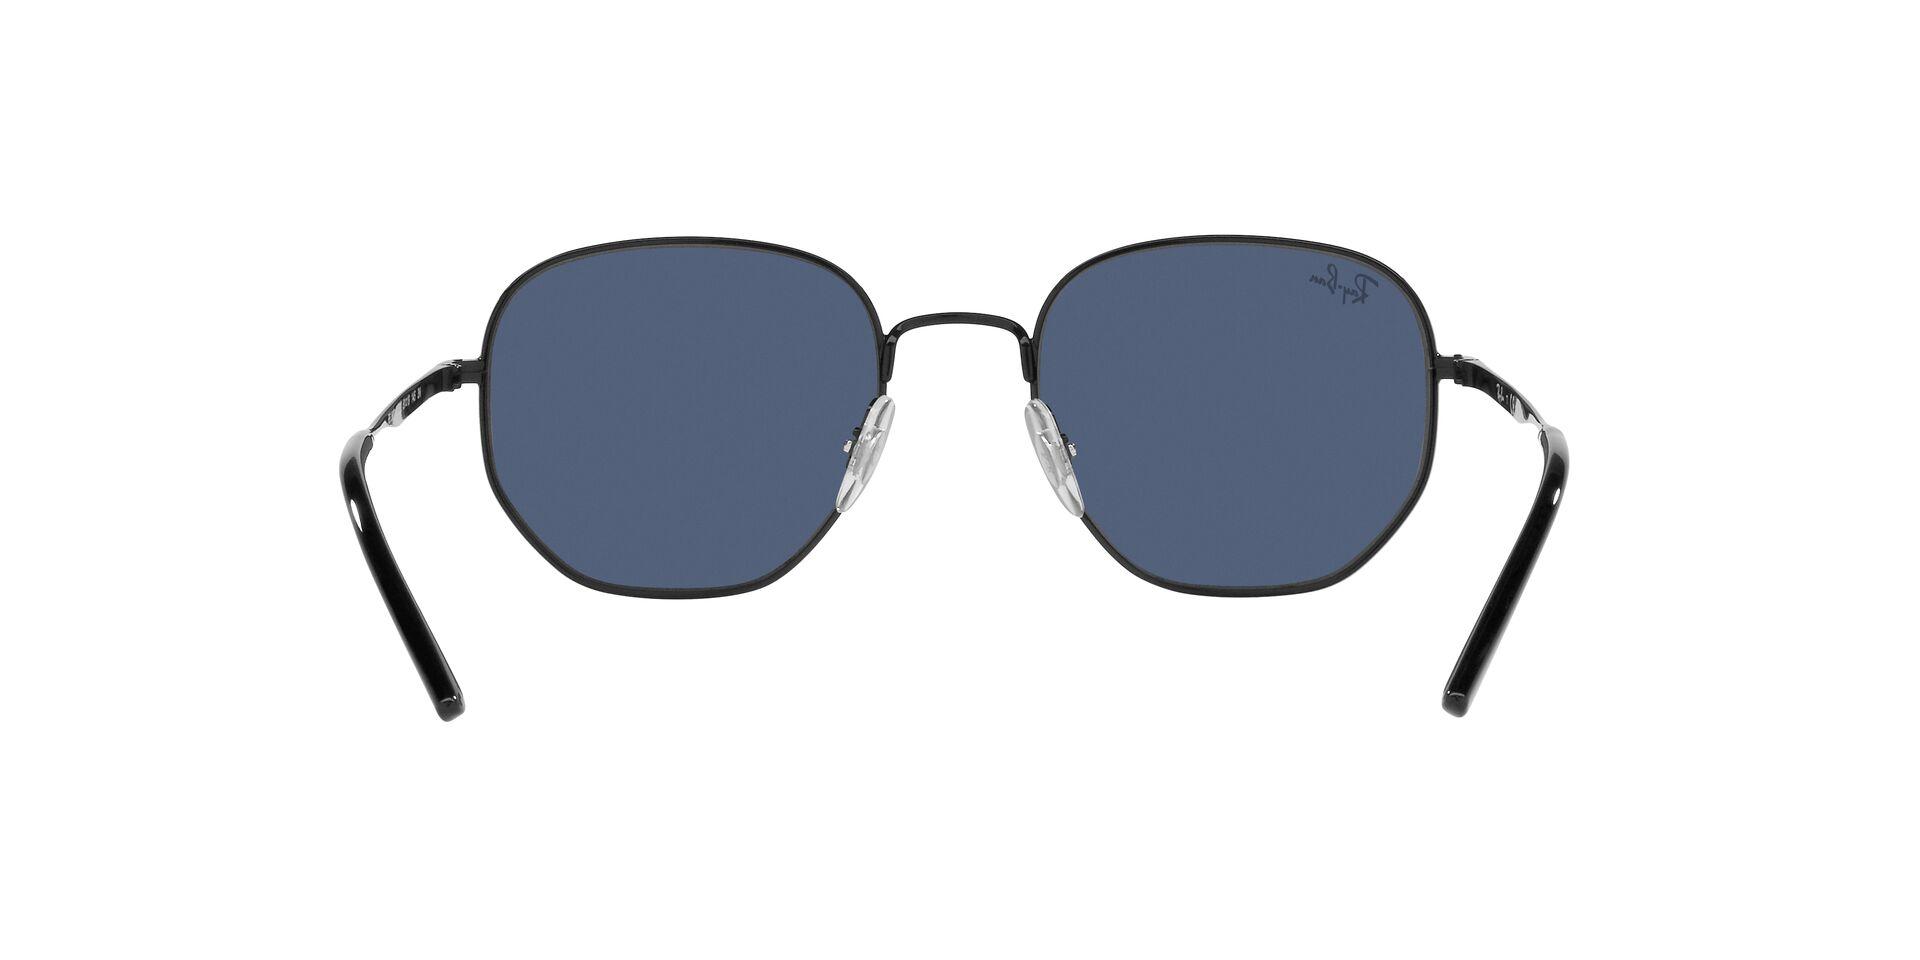 Mắt kính RAY-BAN - - RB3682 002/80 -Sunglasses